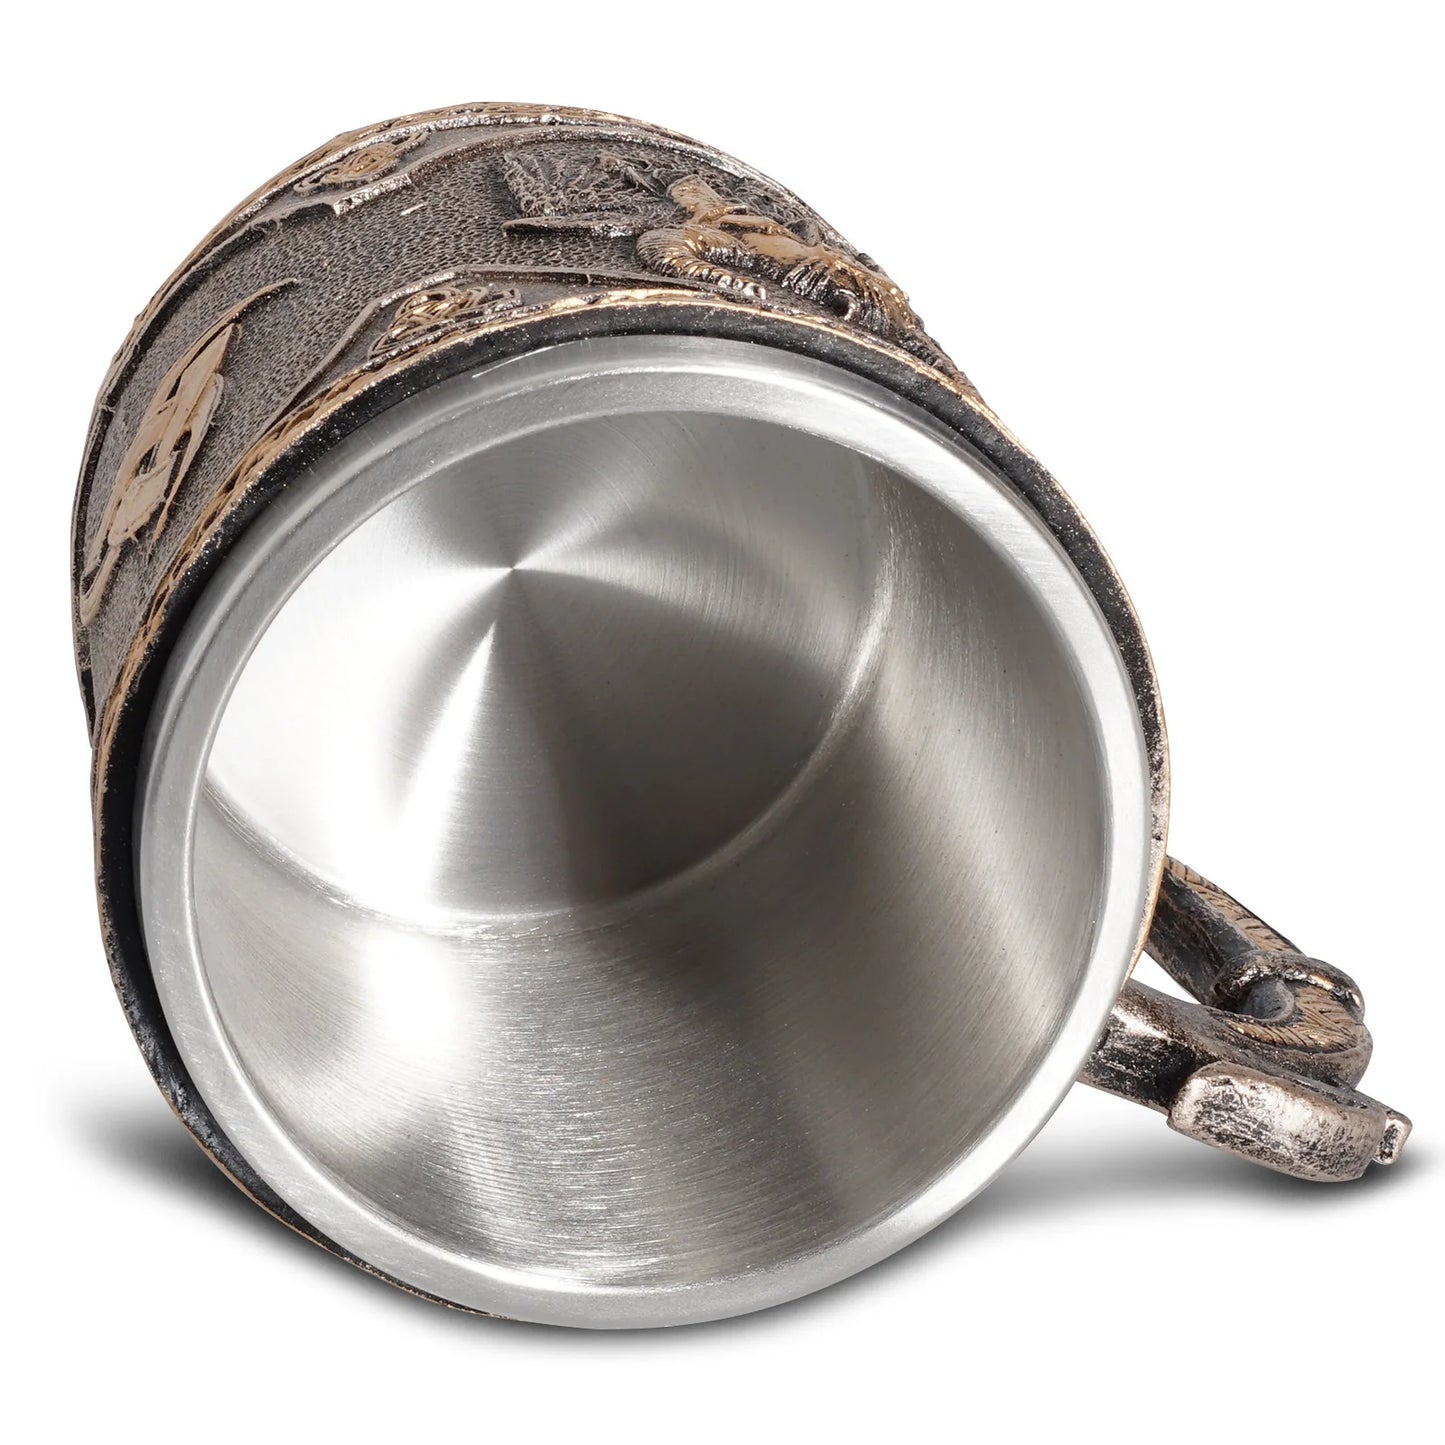 Warrior Style Resin Stainless Steel Beer Viking Mug